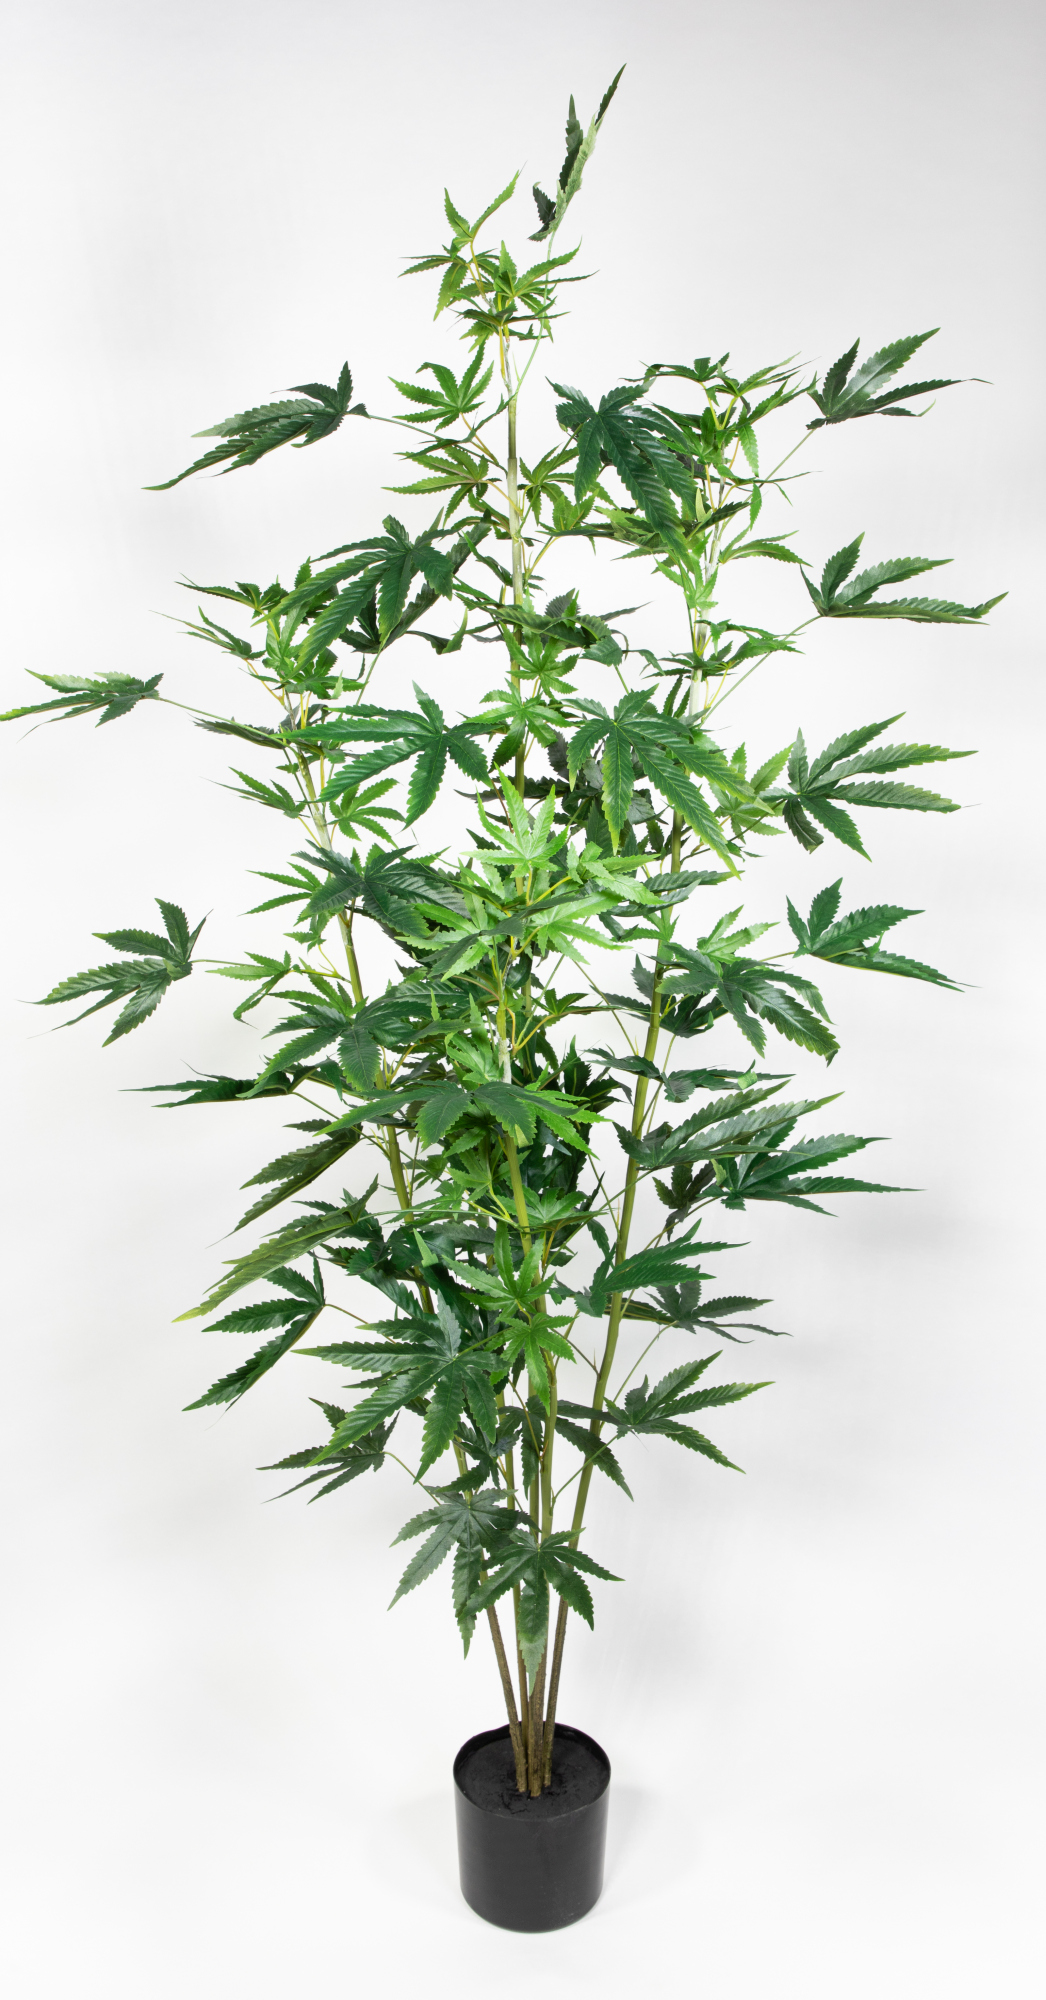 Hanfpflanze / Cannabispflanze 165cm GA künstlicher Baum Kunstbaum Kunstpflanzen Hanf Cannabis Weed